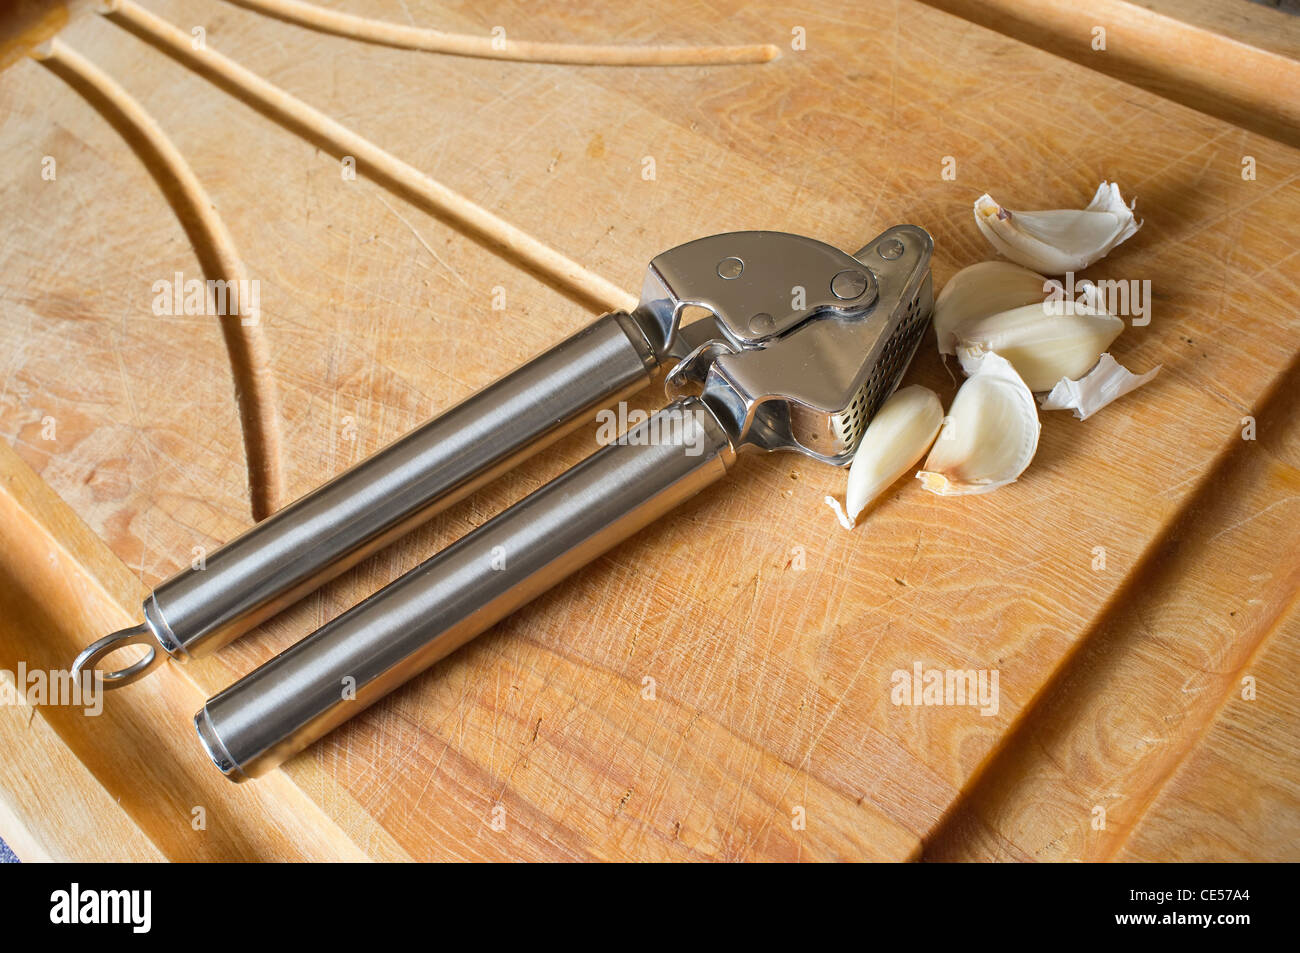 Prensa ajos con dientes de ajo sobre una tabla para cortar Foto de stock